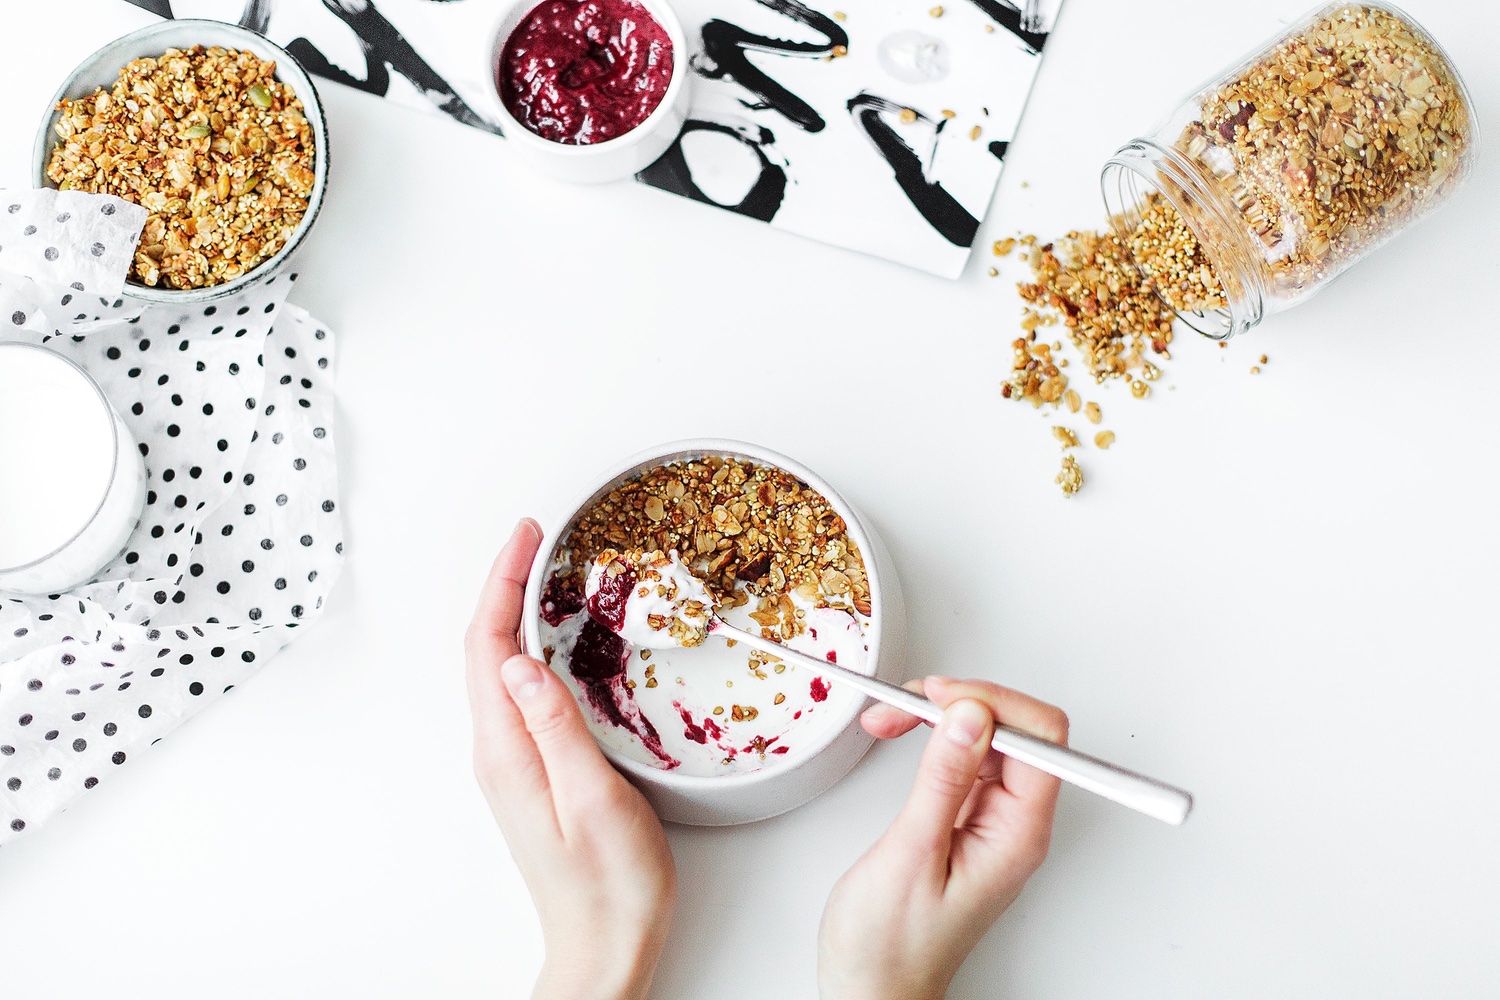 Desayunos saludables y rápidos para diabéticos - breakfasts easy and healthy for diabetics